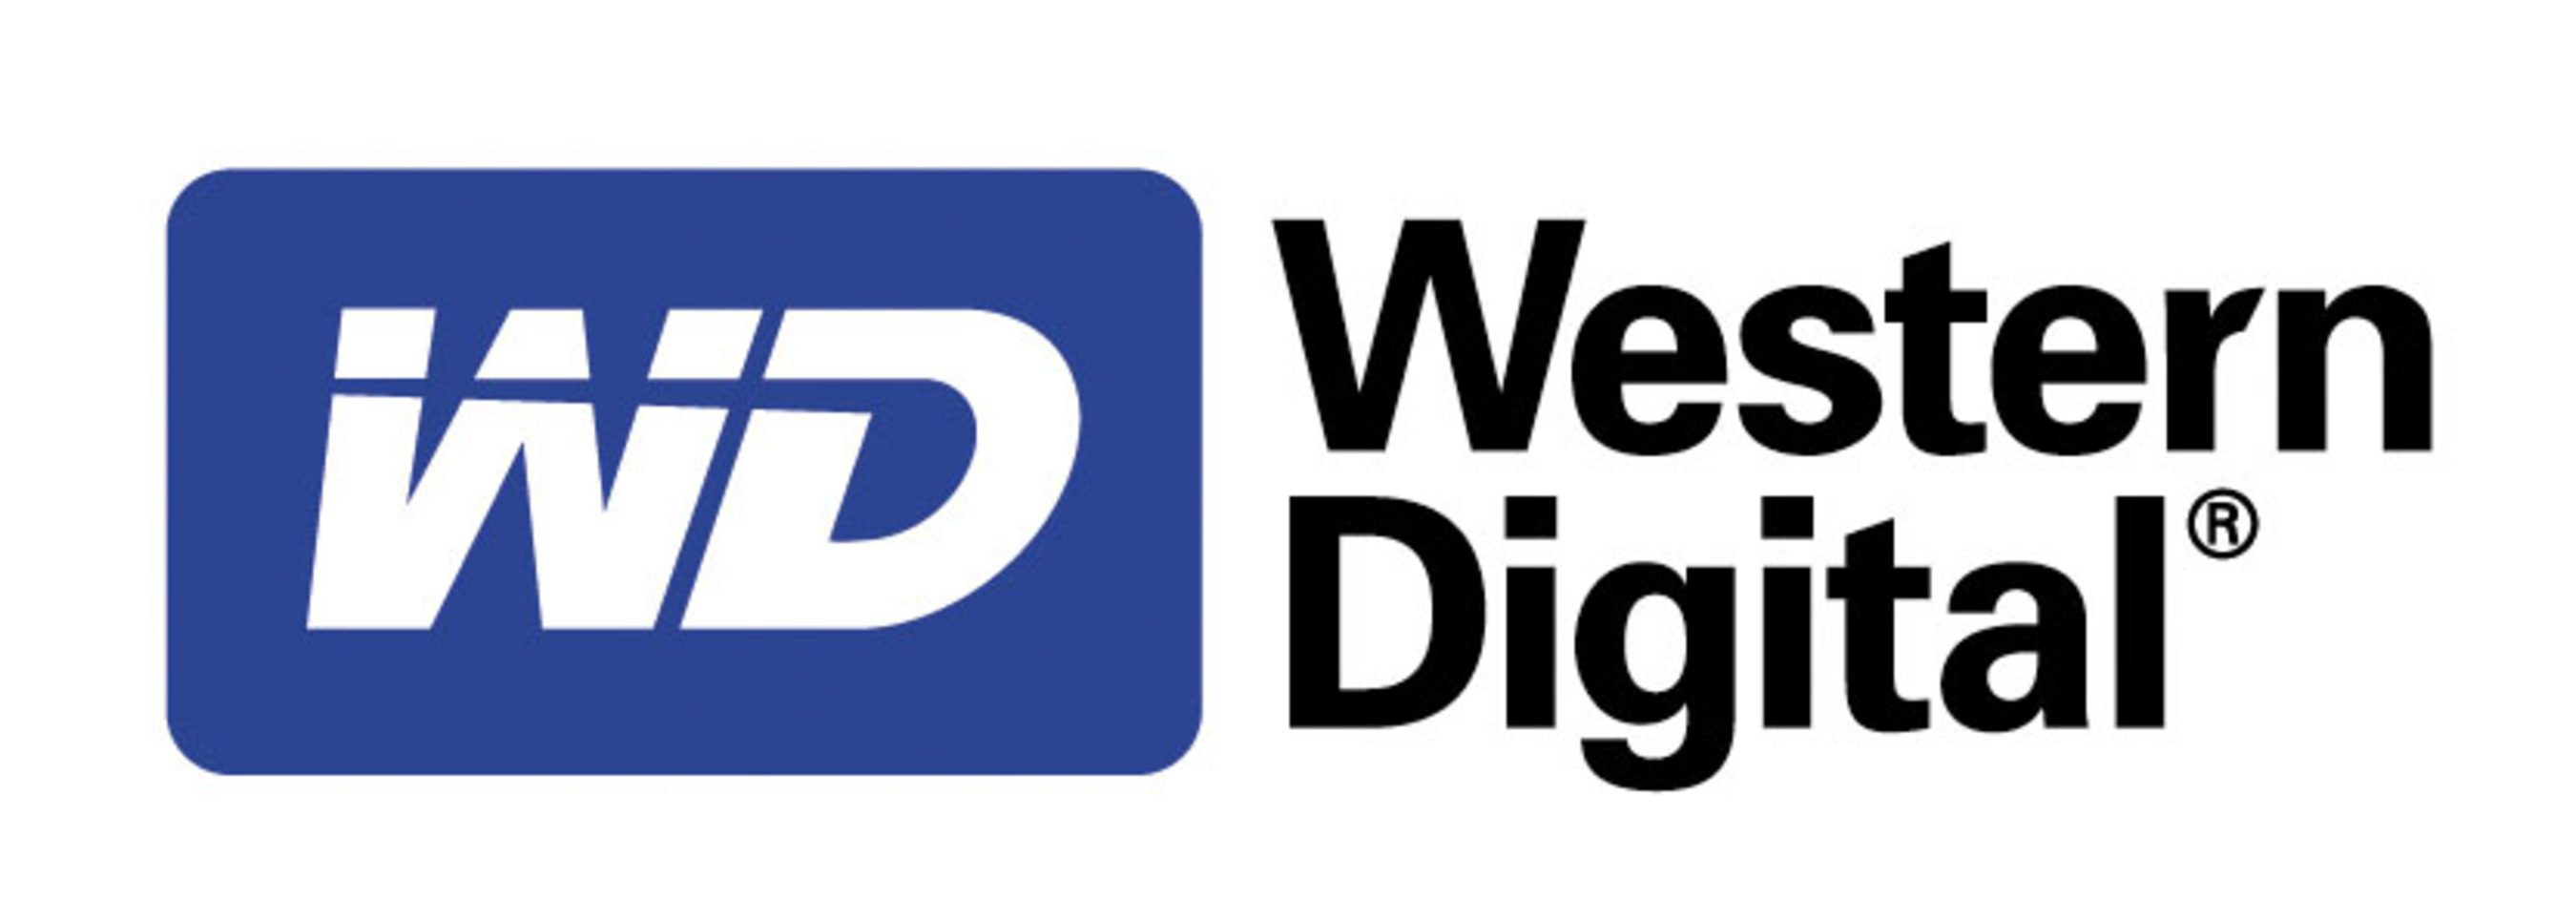 Western Digital Corporation logo.